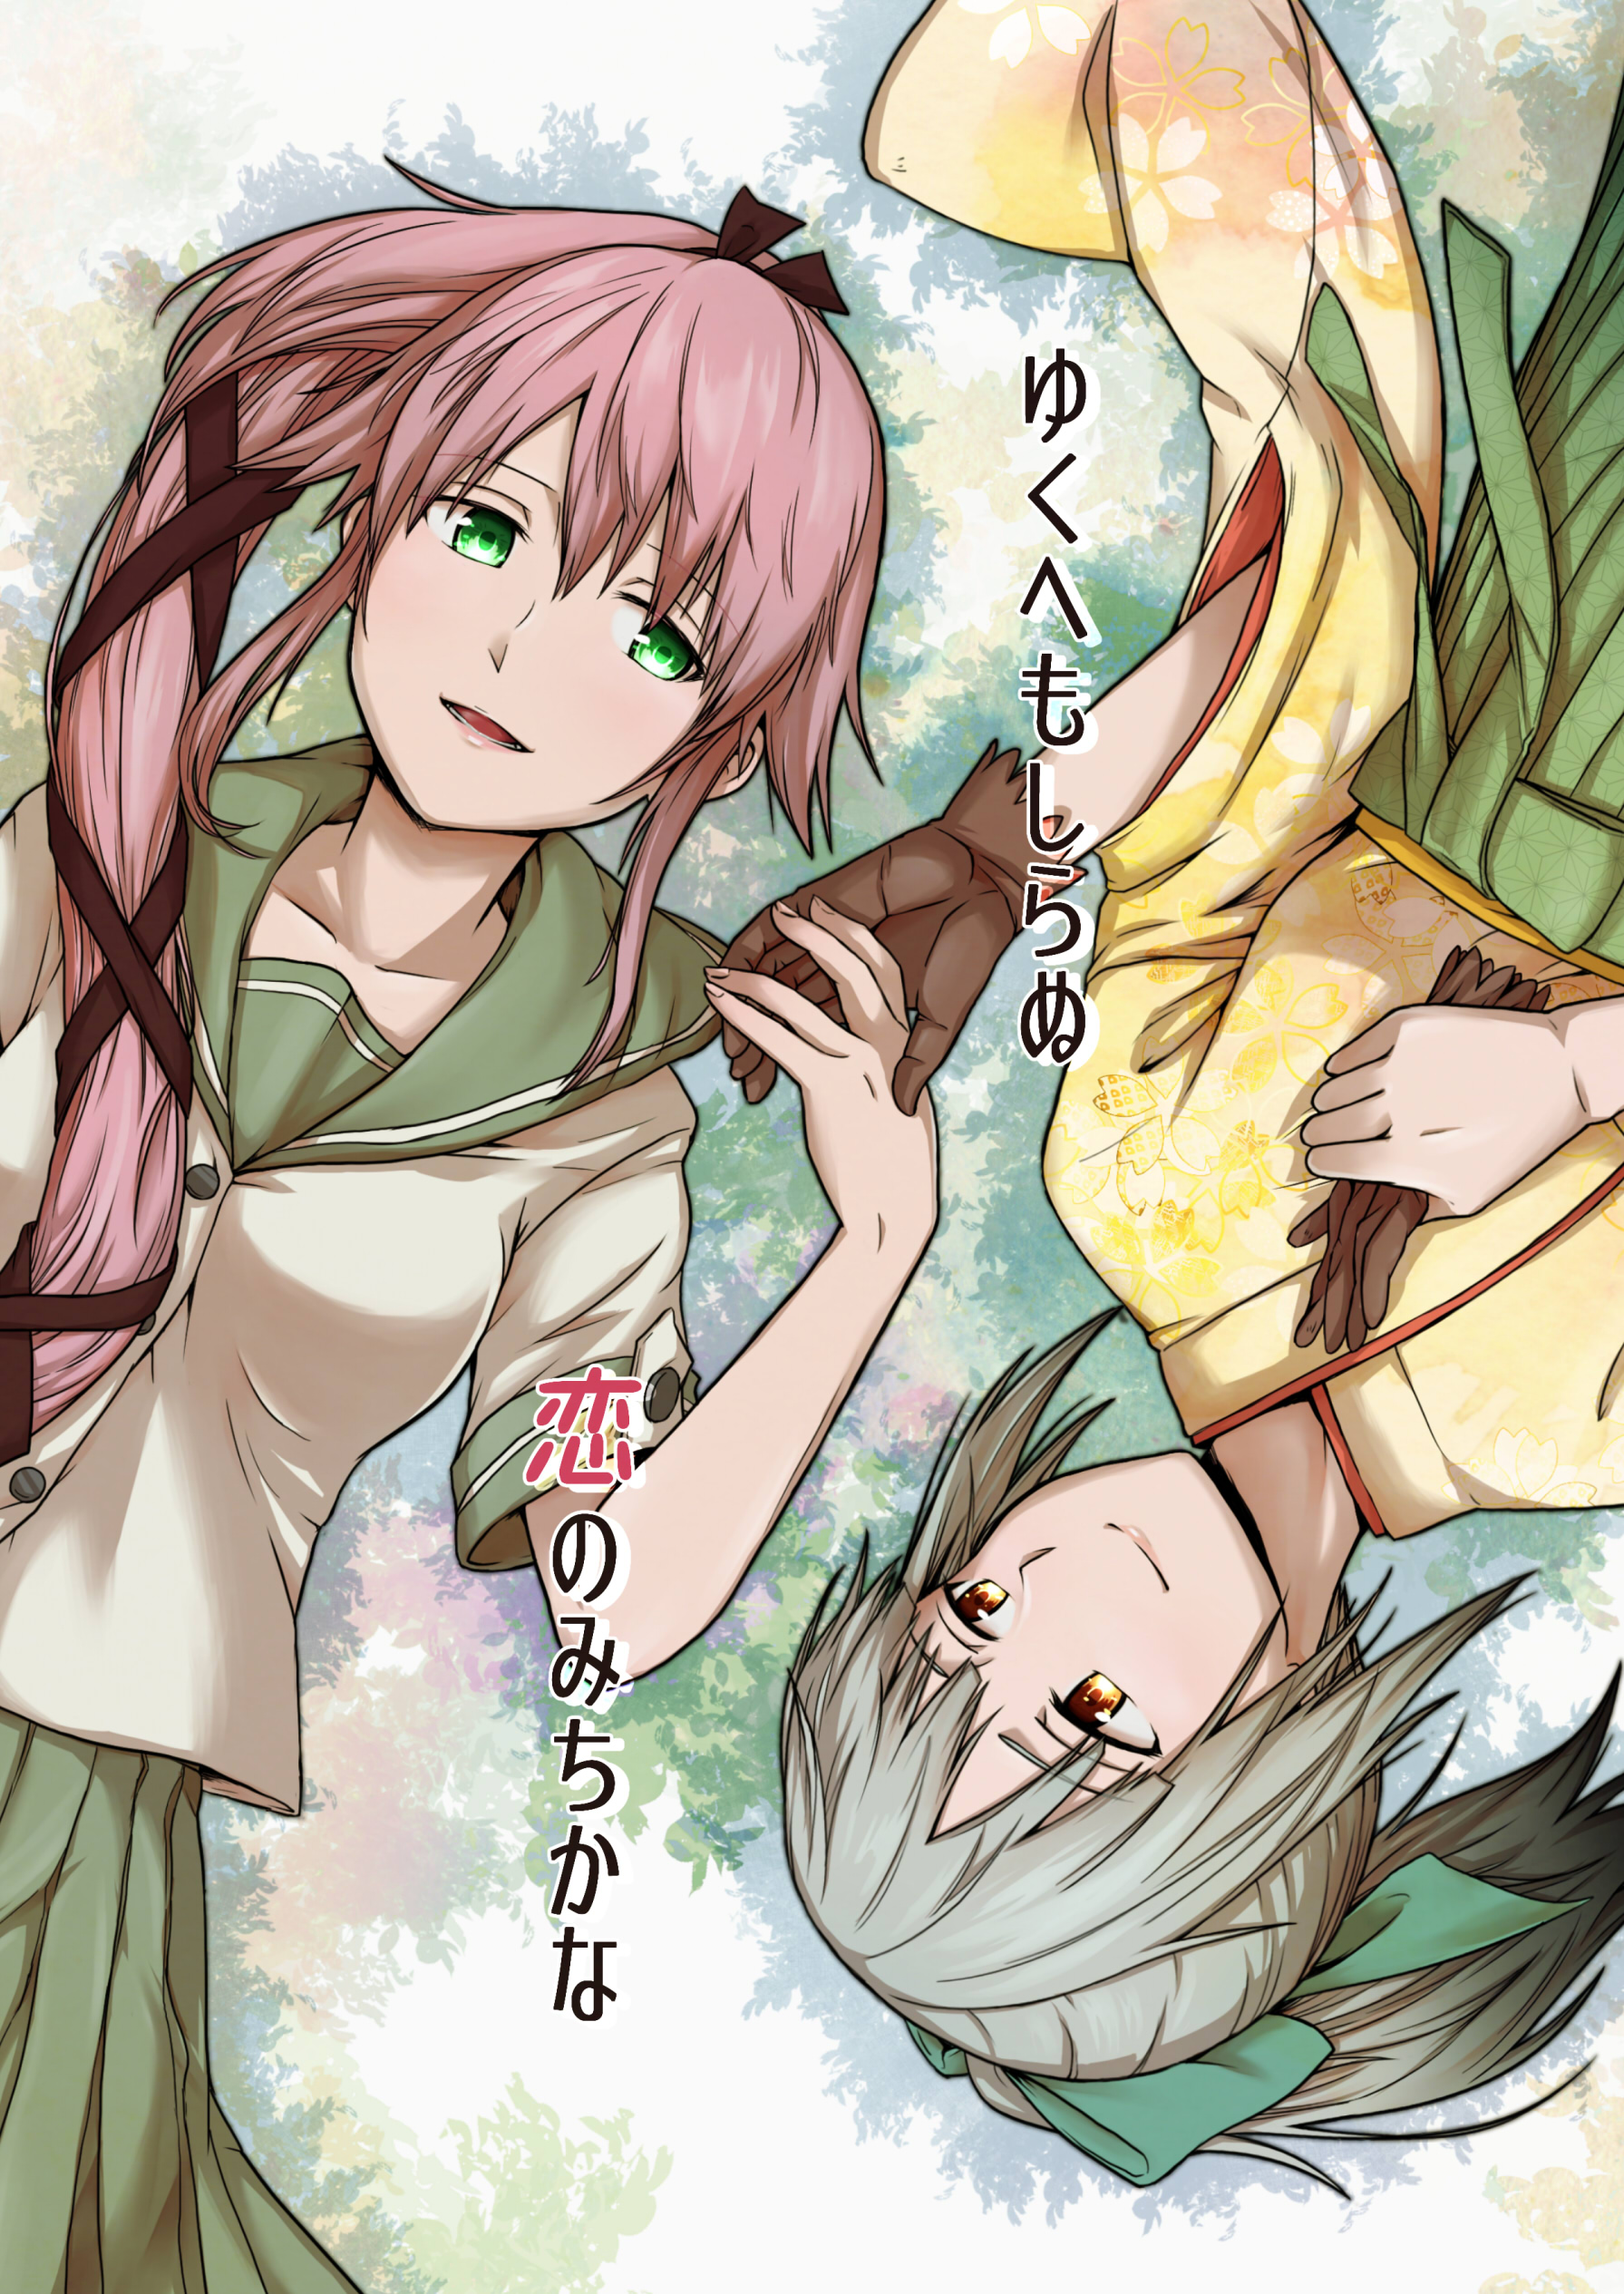 Anime Anime Girls Yuubari KanColle Yura KanColle Kantai Collection Ponytail Pink Hair Green Hair Art 1791x2530